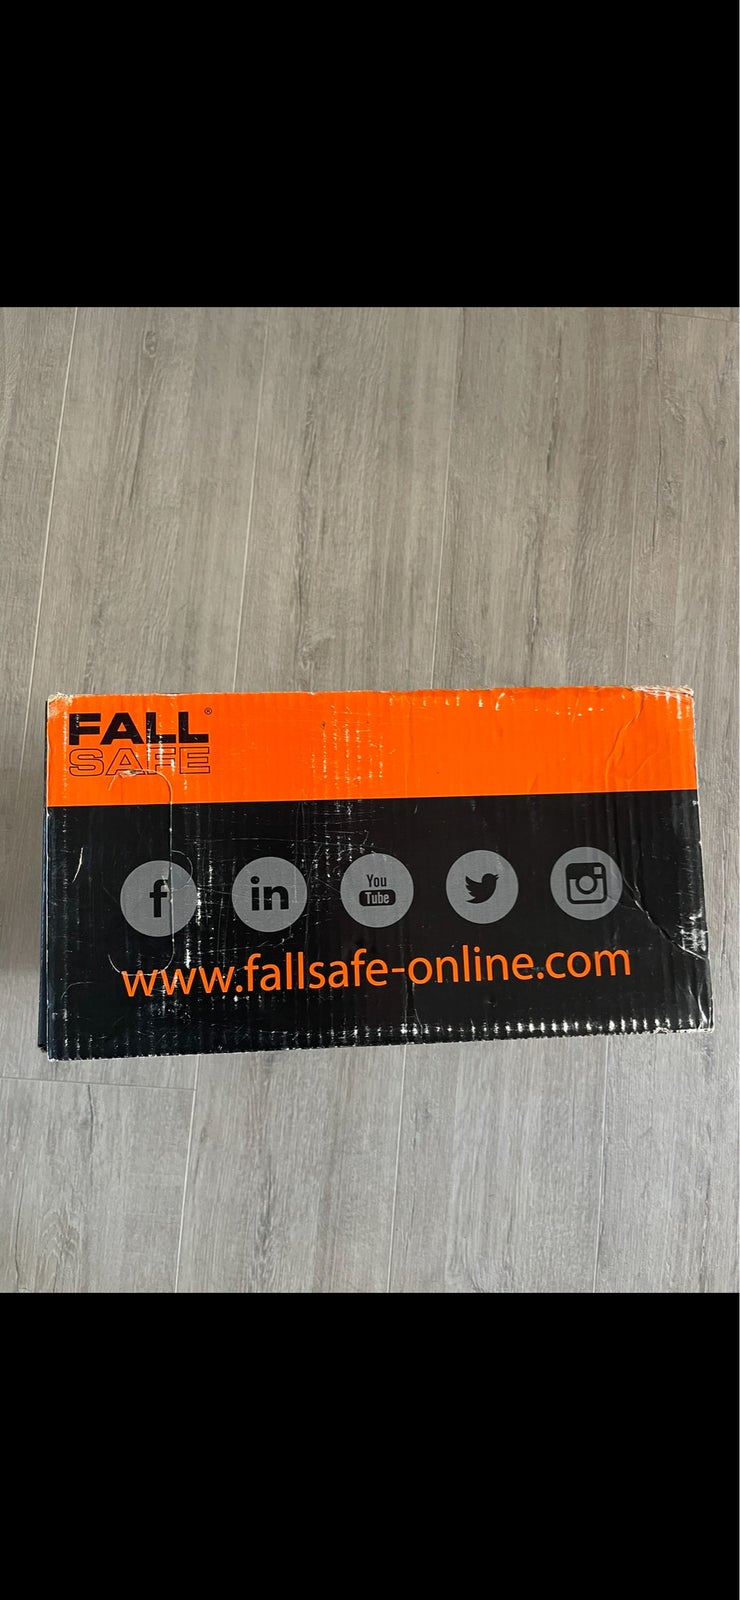 Faldsikring, Fallsafe-online